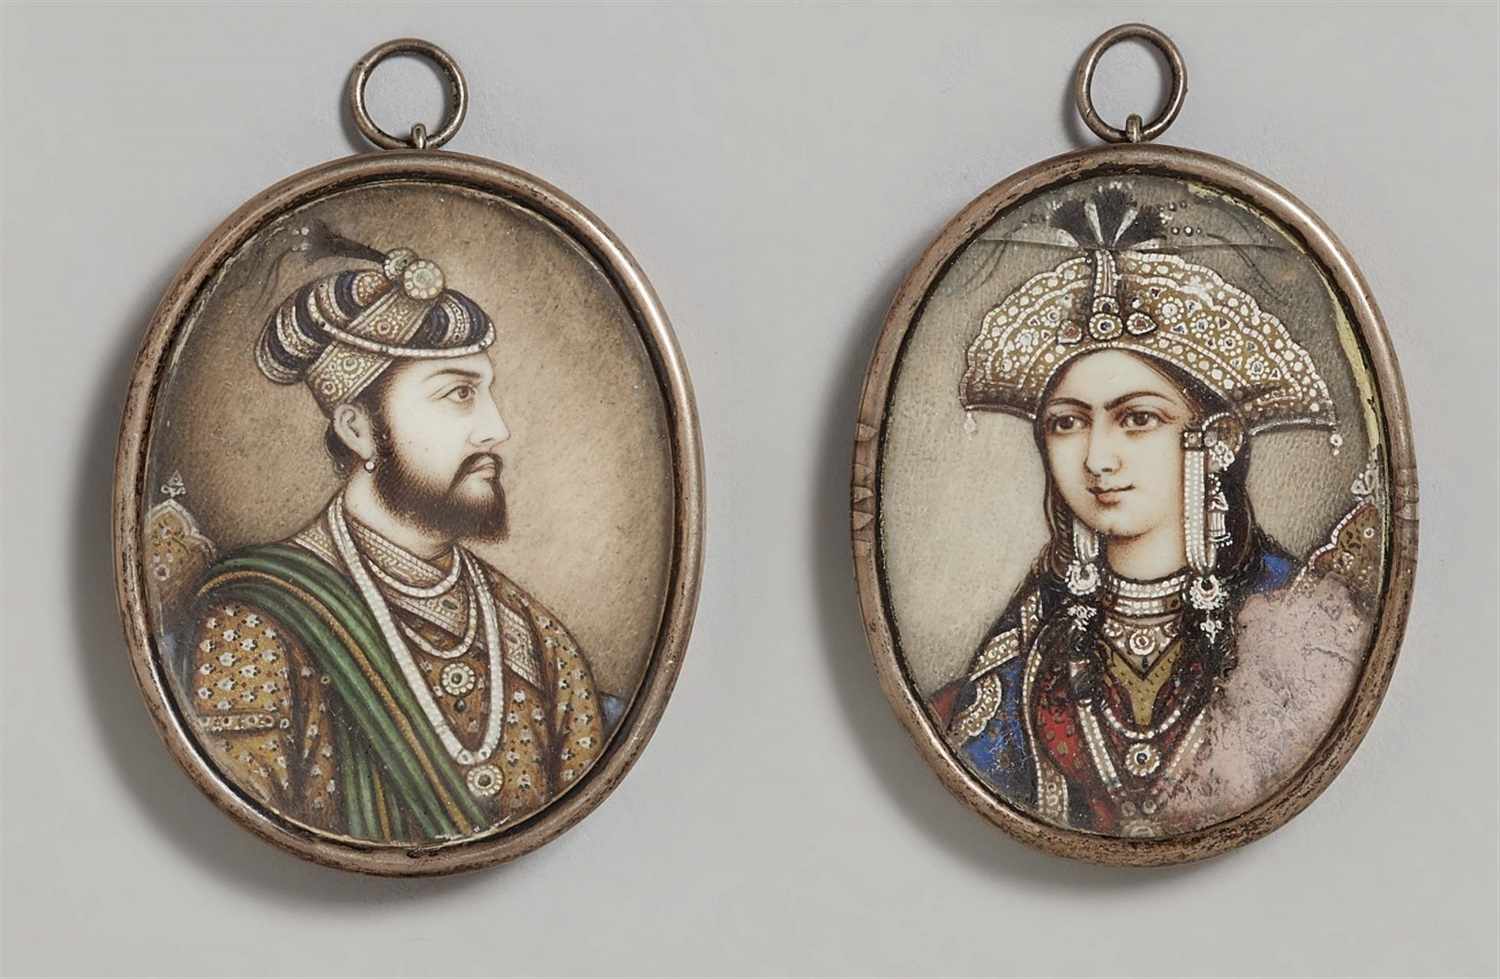 Zwei Miniaturen auf Elfenbein. Nordindien, Delhi. Spätes 19. Jh. Darstellung des Moghulkaisers Akbar